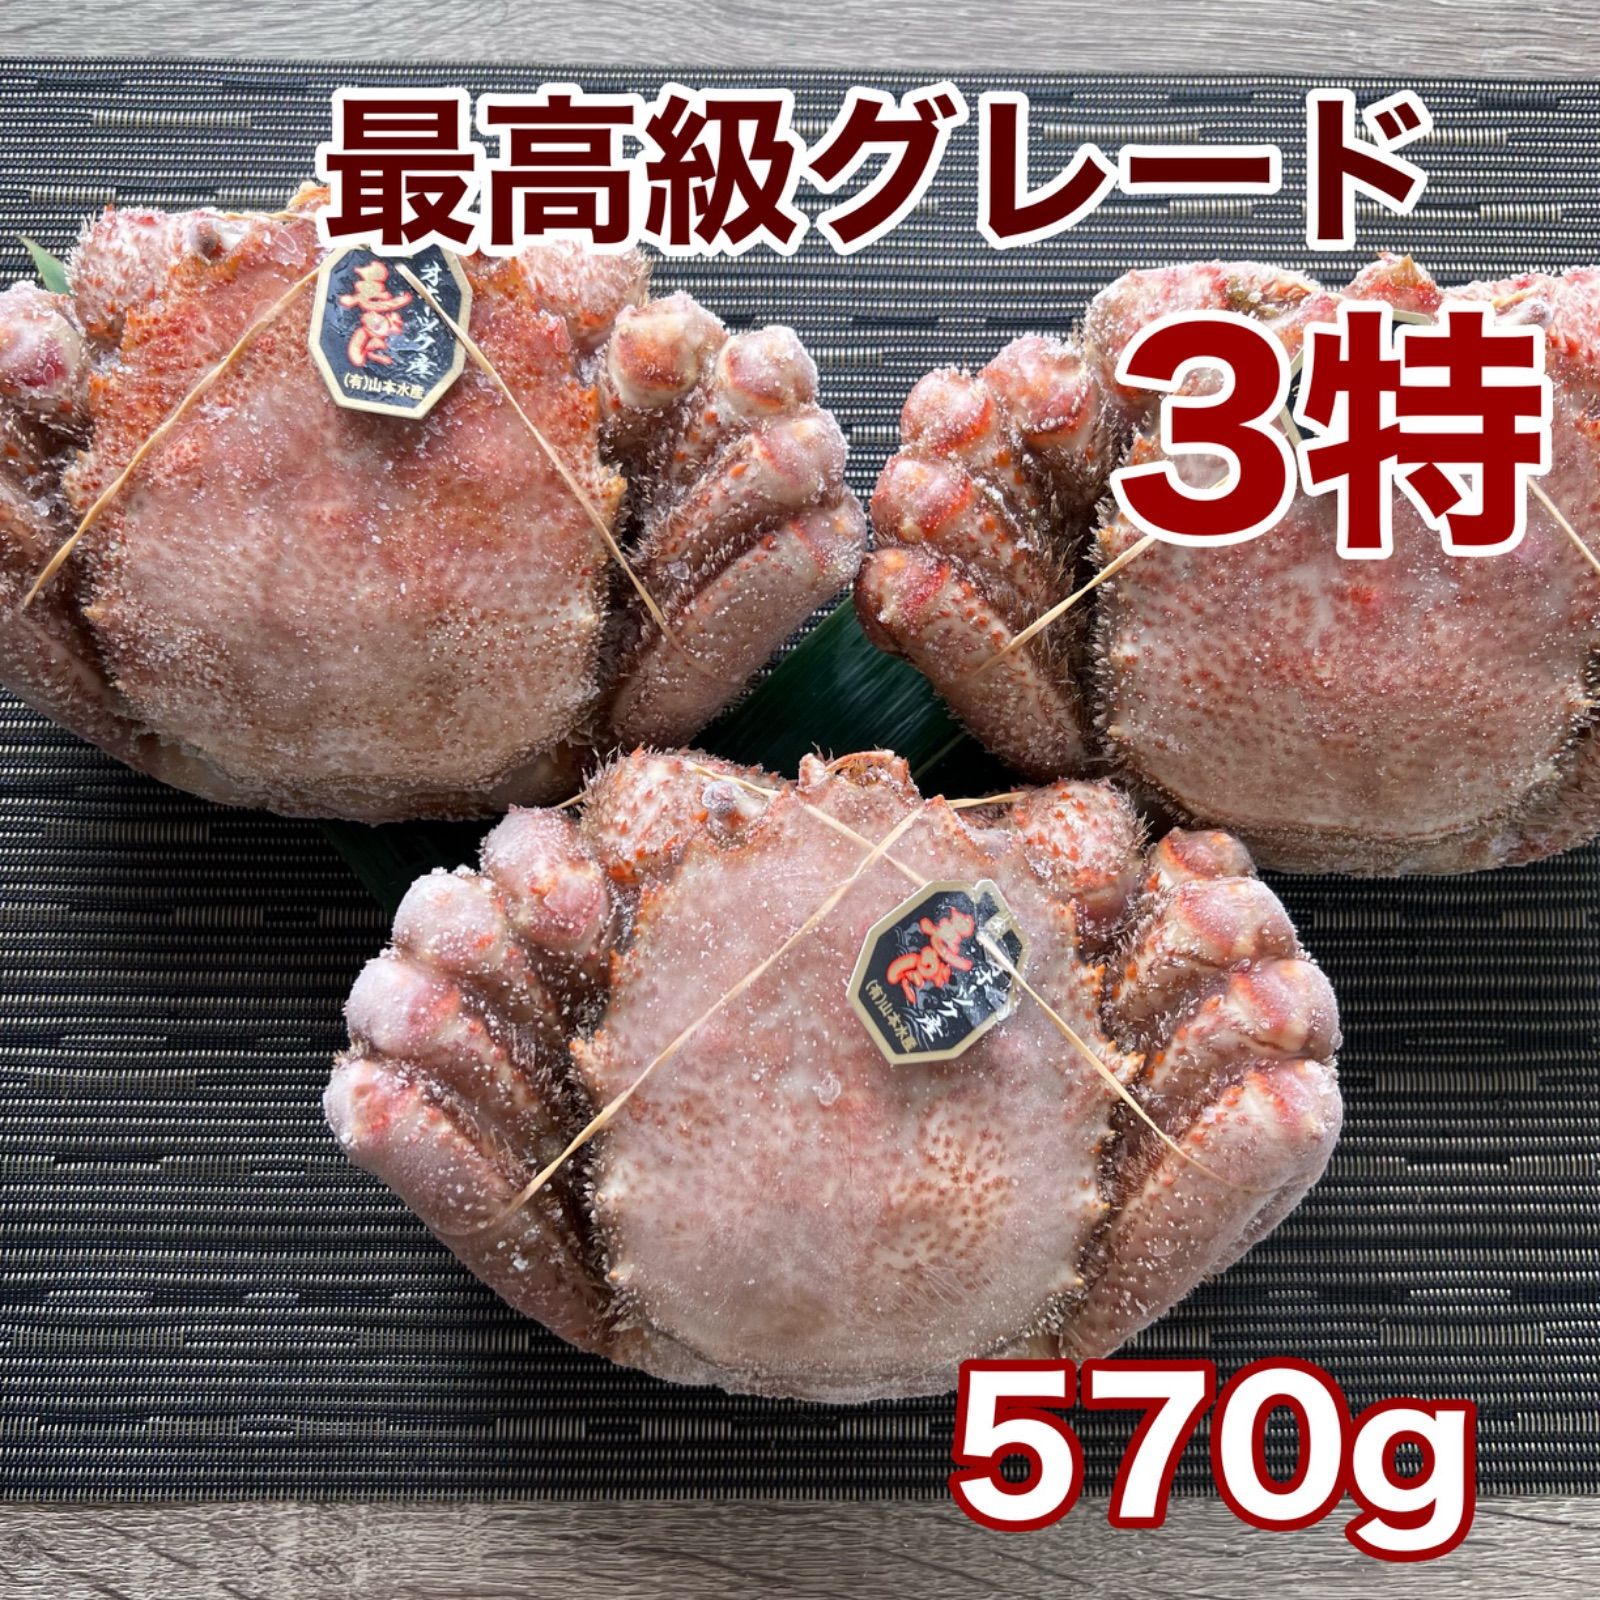 最高級3特北海道オホーツク産冷凍毛蟹570g3尾21400円-0